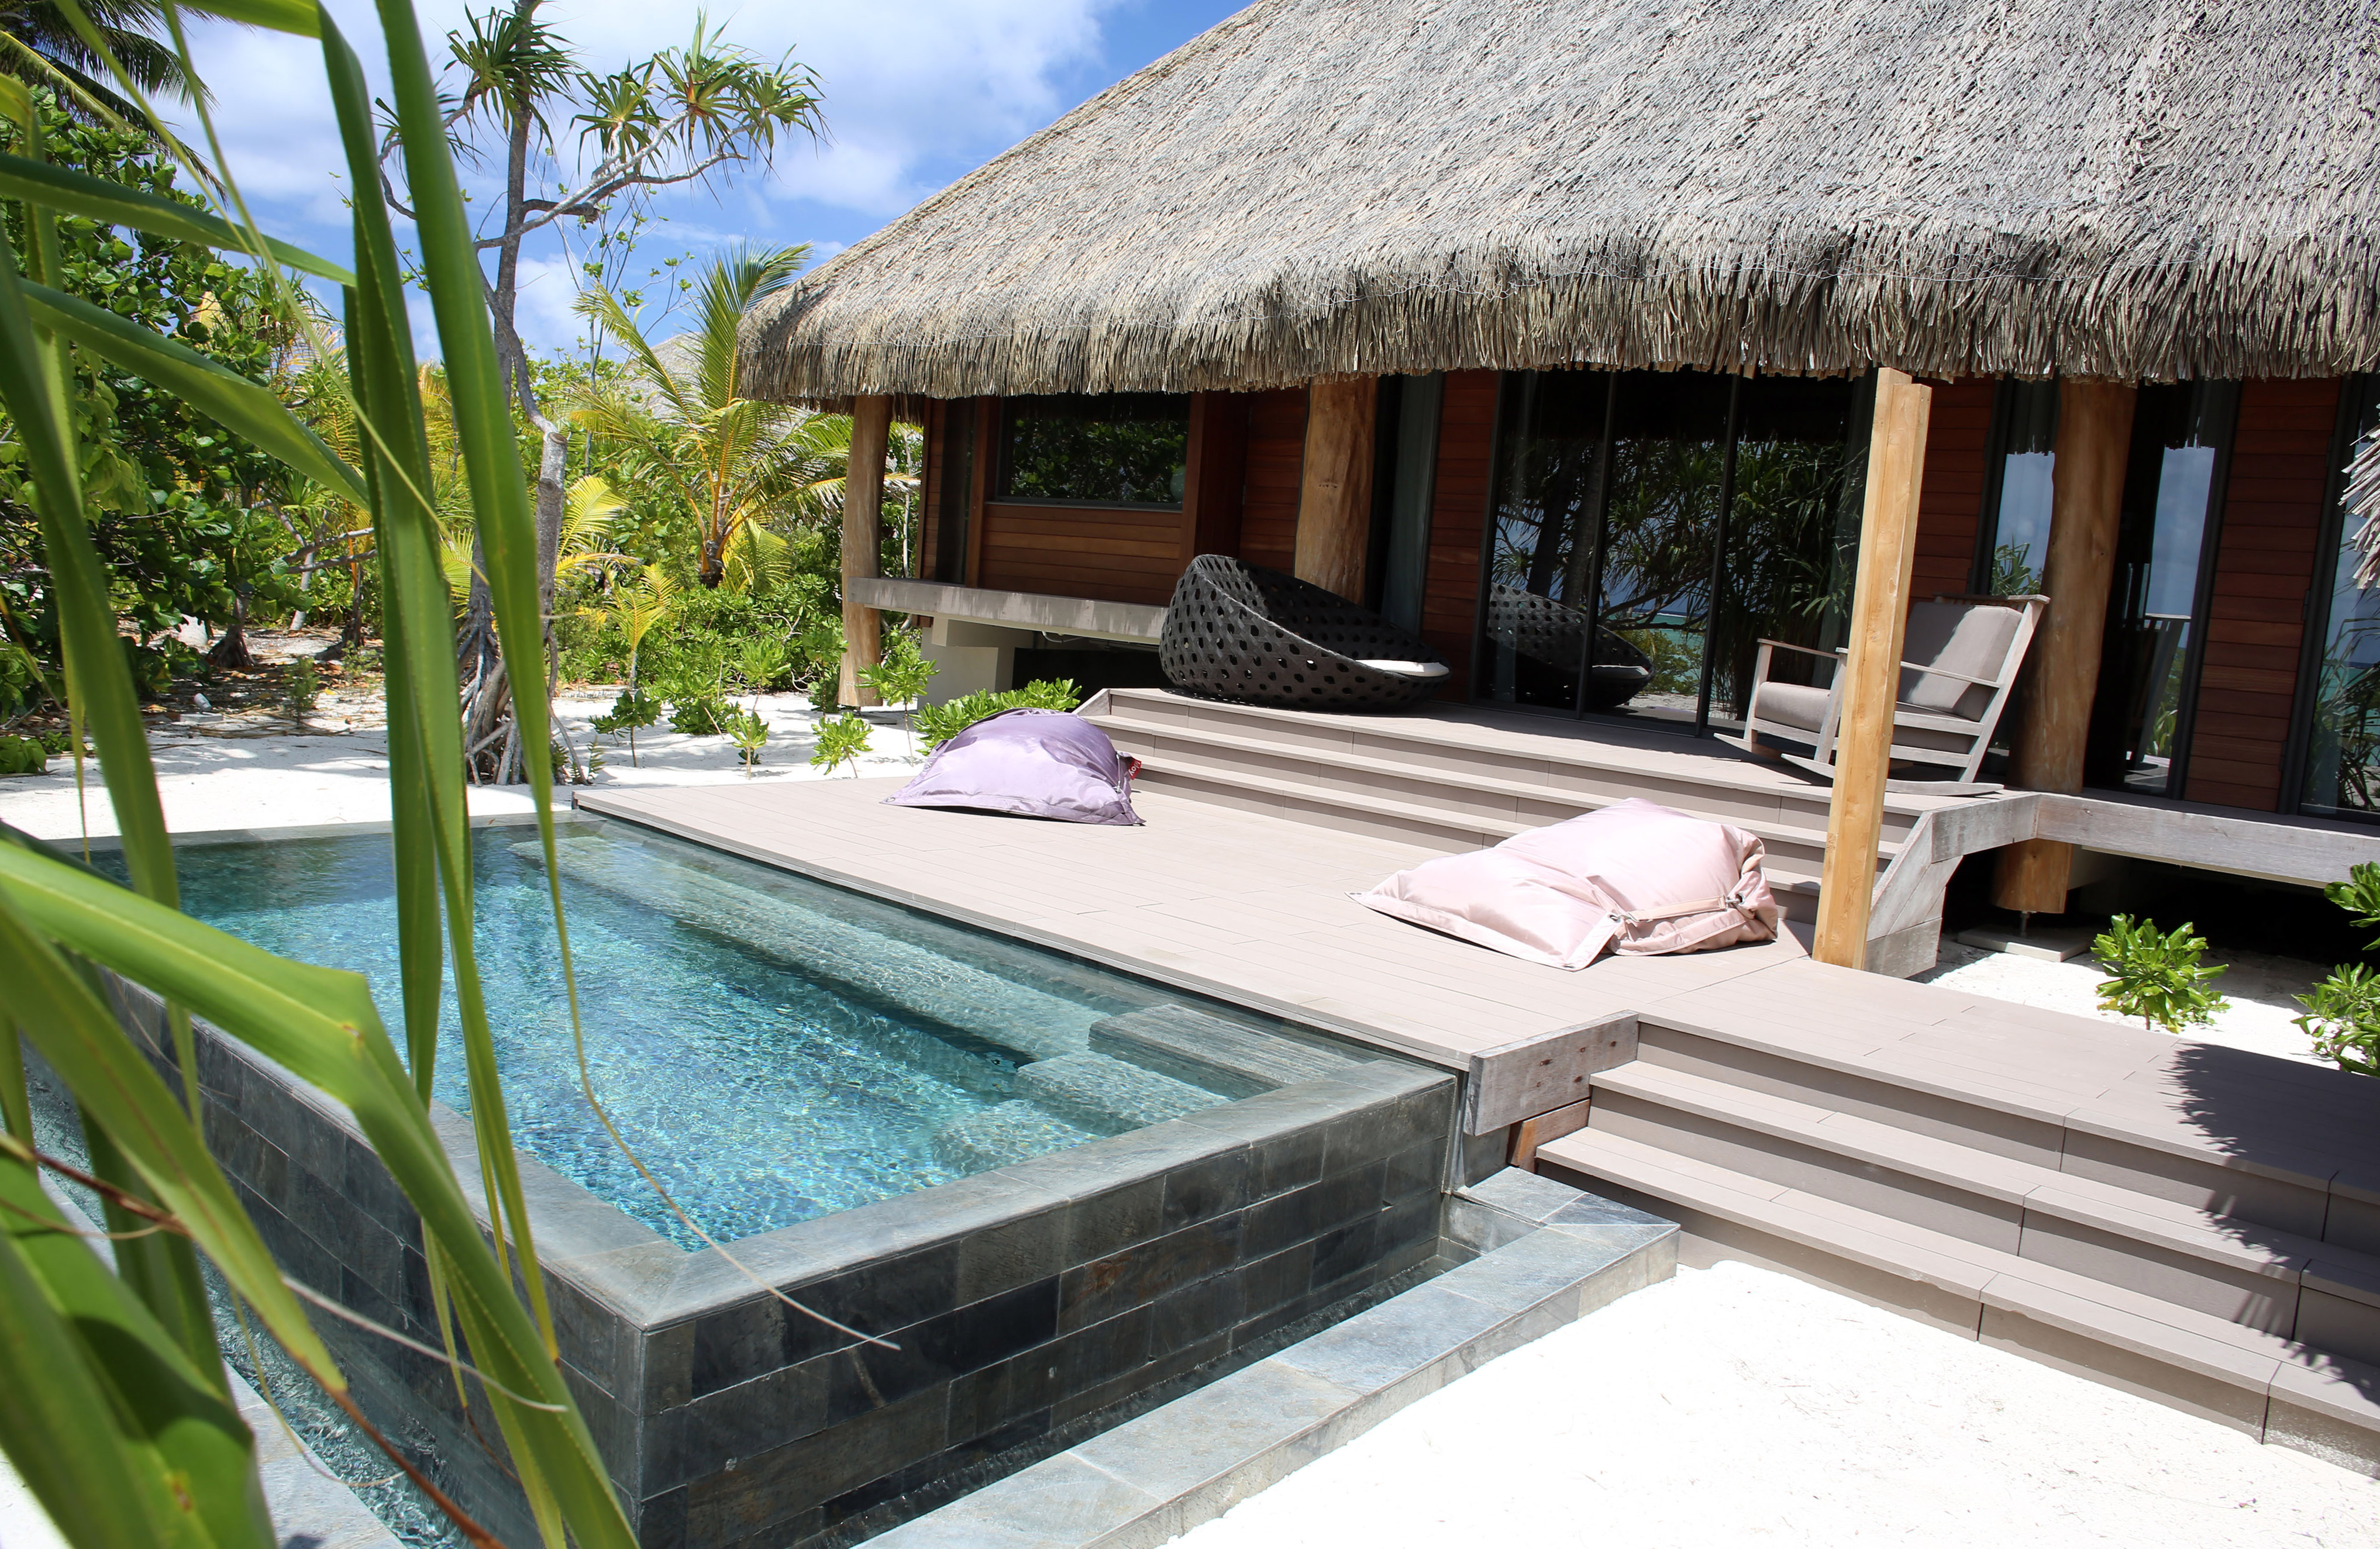 Le rêve de Marlon Brando: un hôtel de luxe écolo sur un atoll désert